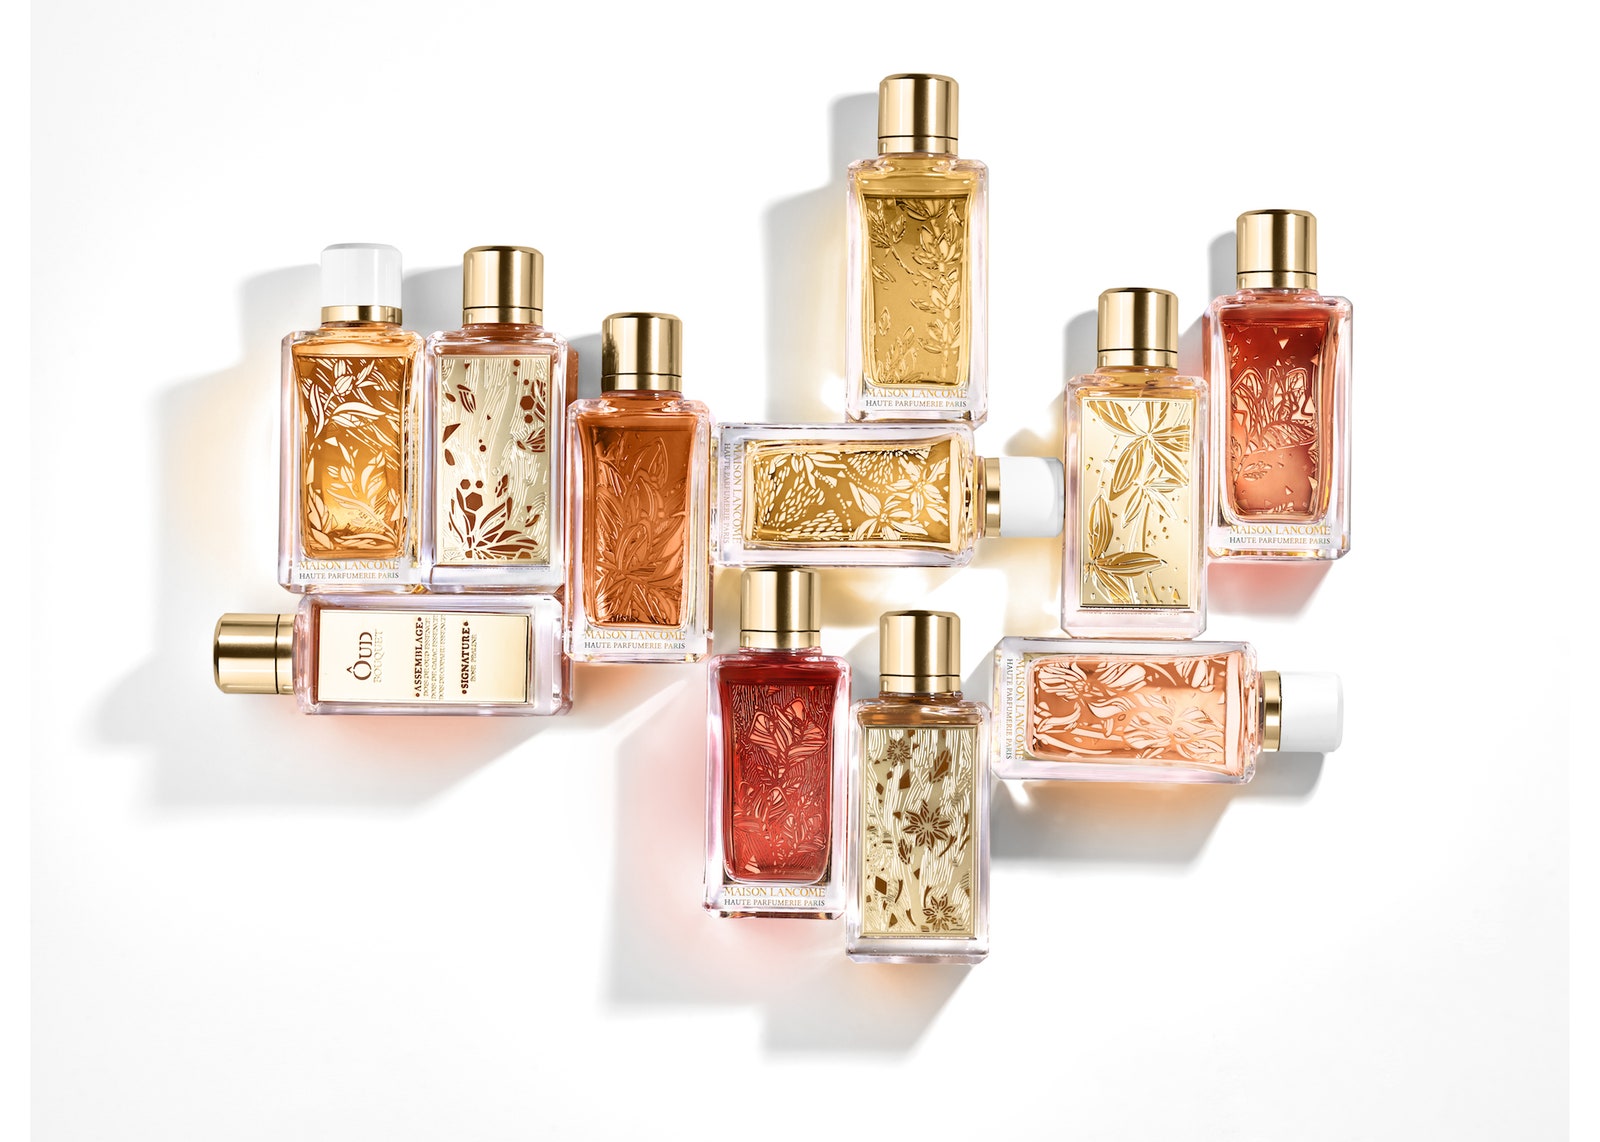 Maison Lancôme представляет коллекцию ароматов на основе сандалового дерева ириса и апельсина